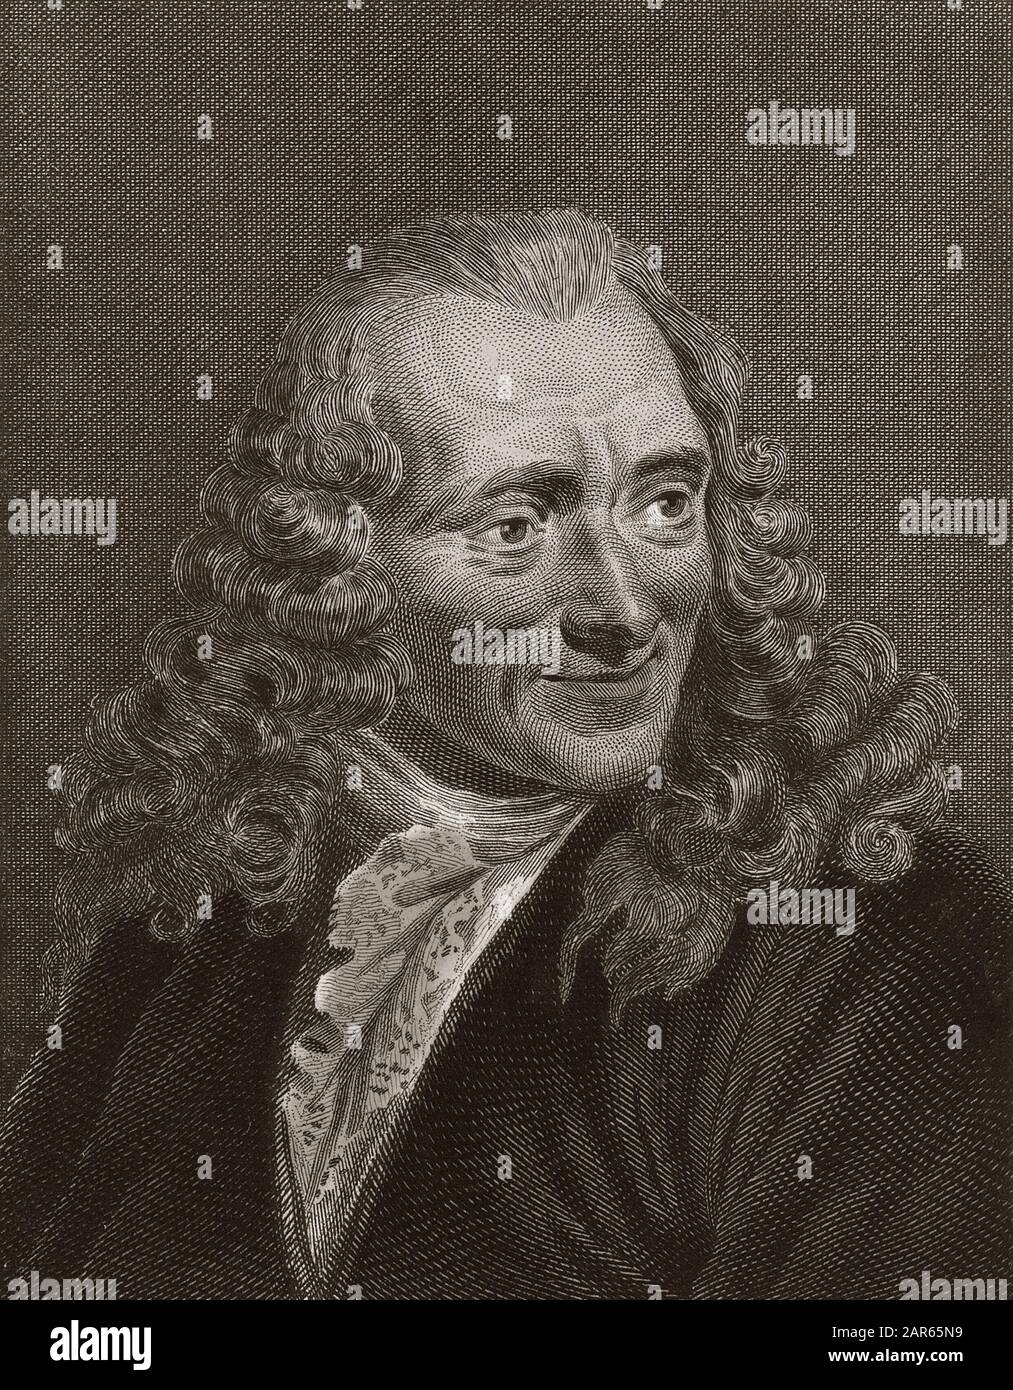 Porträt Voltaires - Gravur - Francois-Marie Arouet de Voltaire dit Voltaire (1694-298) - Stockfoto